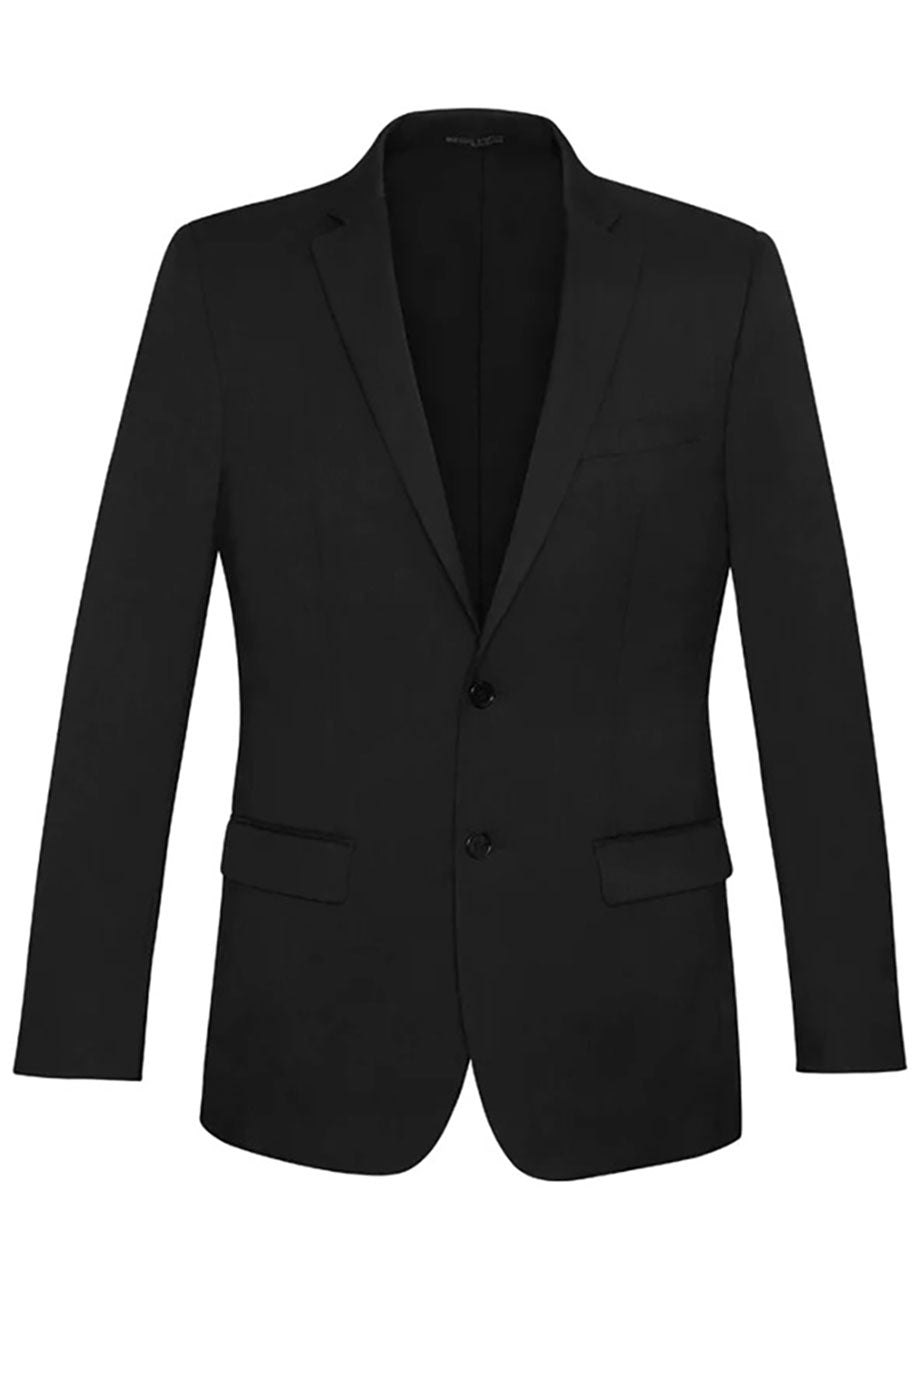 Men's Business Suit Coat, Black